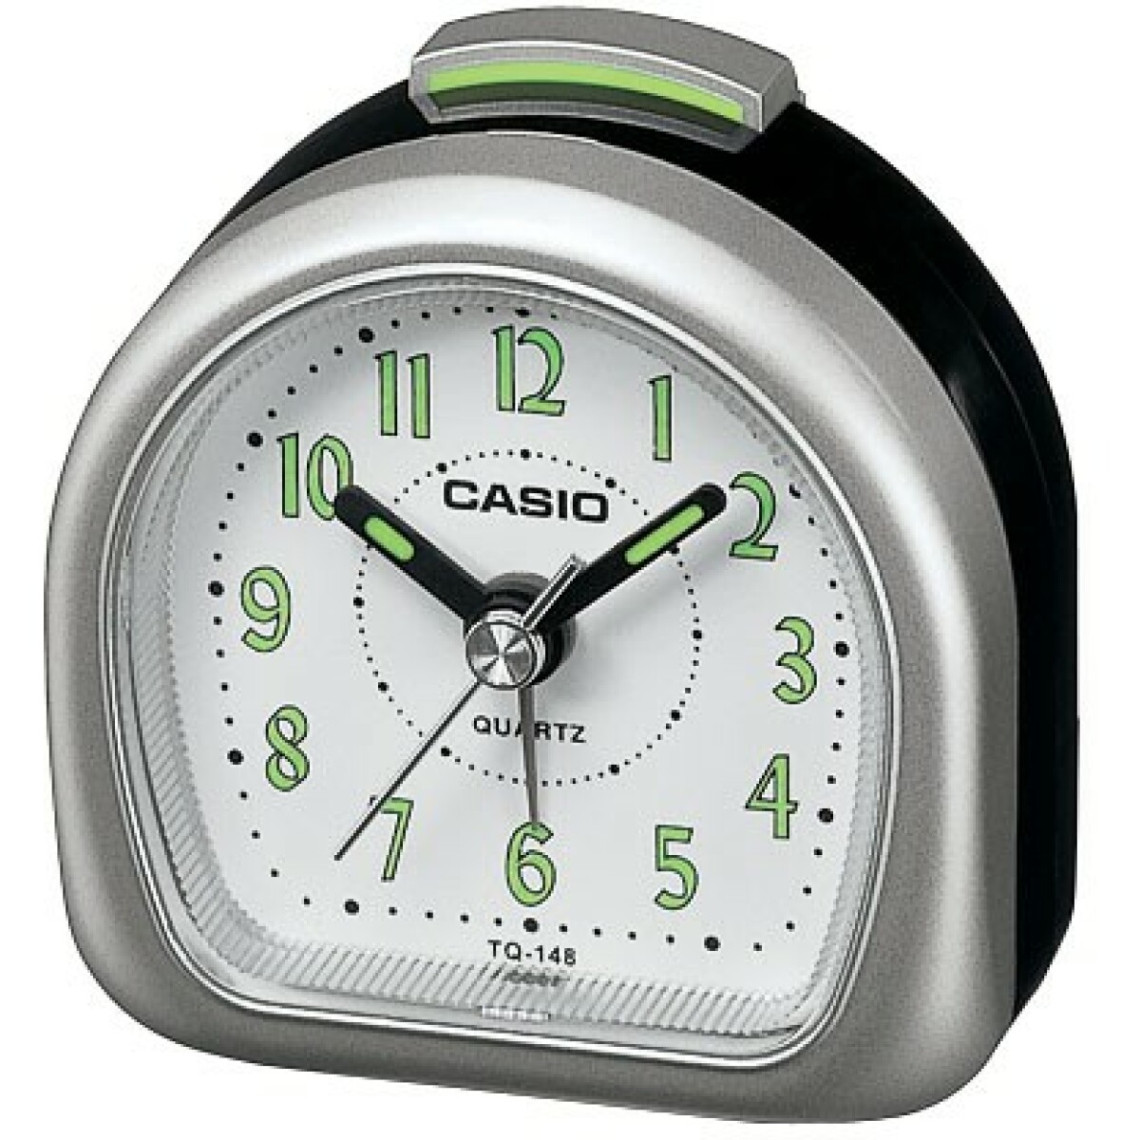 Réveil Casio Casio Collection TQ-148-8EF - Mixte